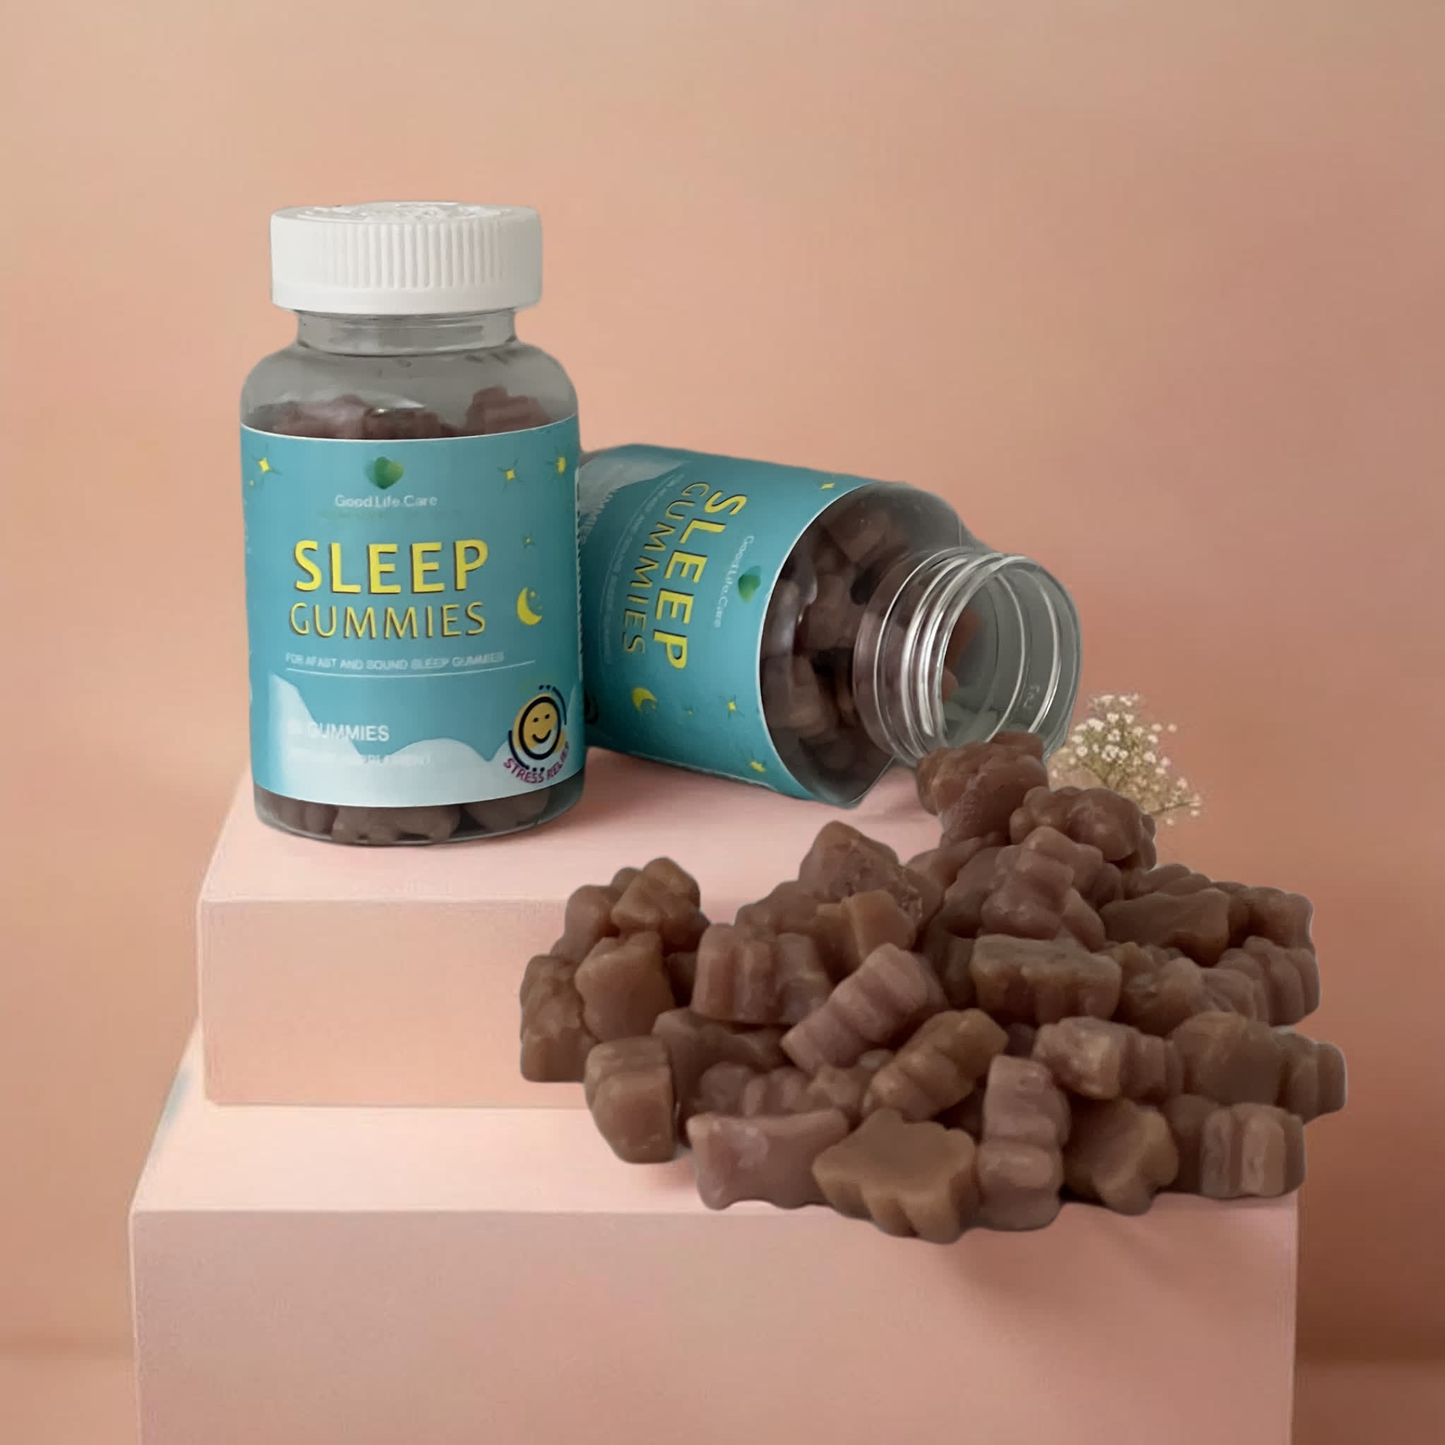 Sleep Gummies (two pack)